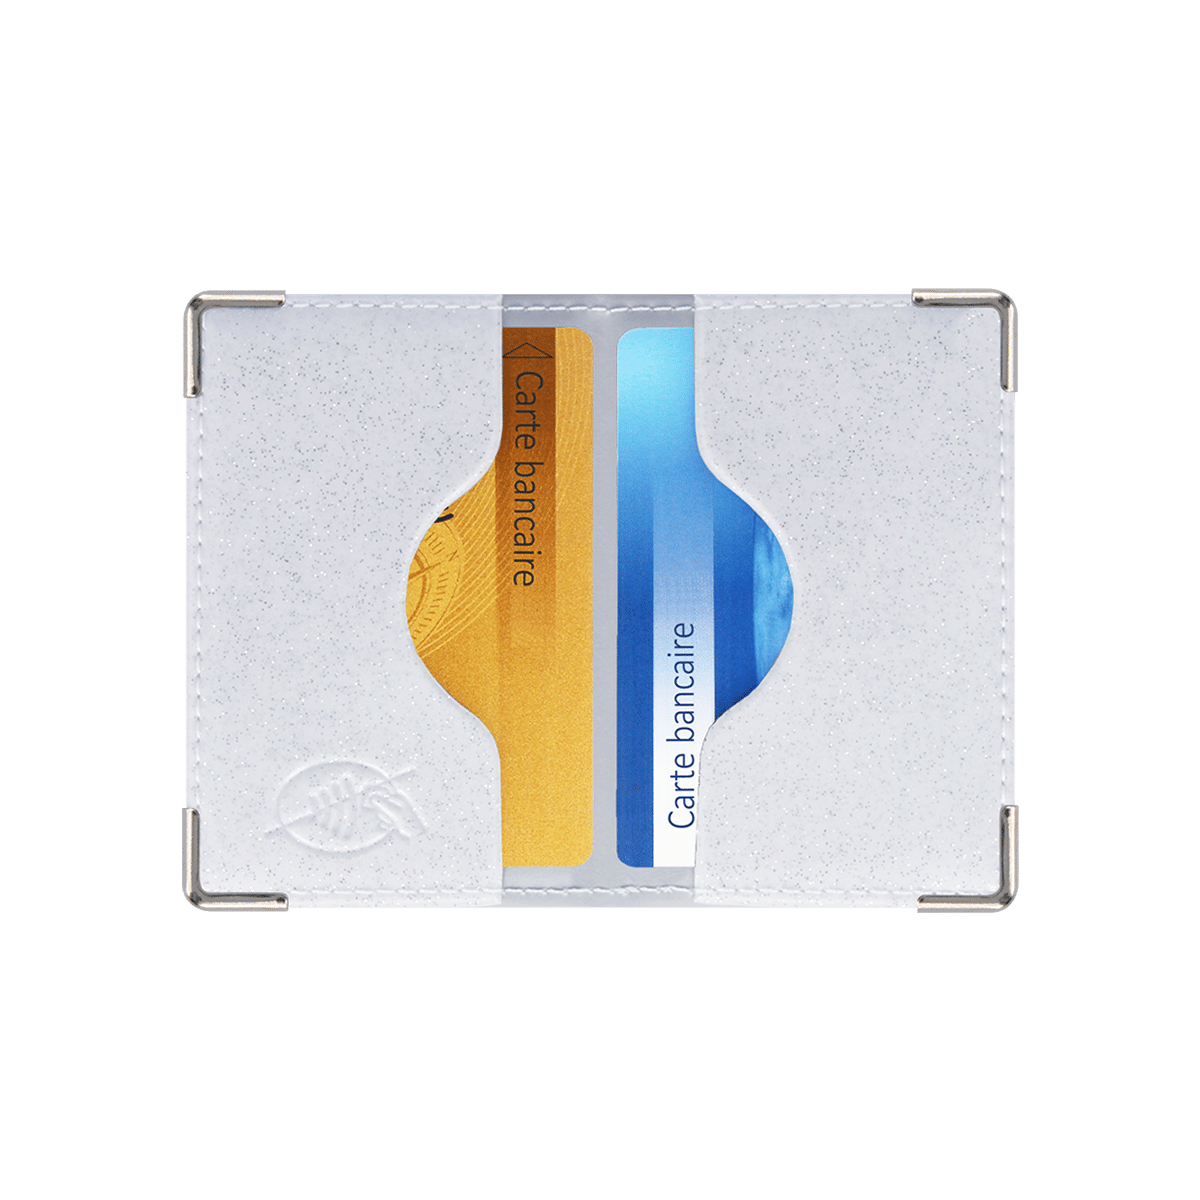 Porte-cartes (2) anti-RFID Silver - Color Pop (Auxence) - Maroquinerie  Française Livraison gratuite